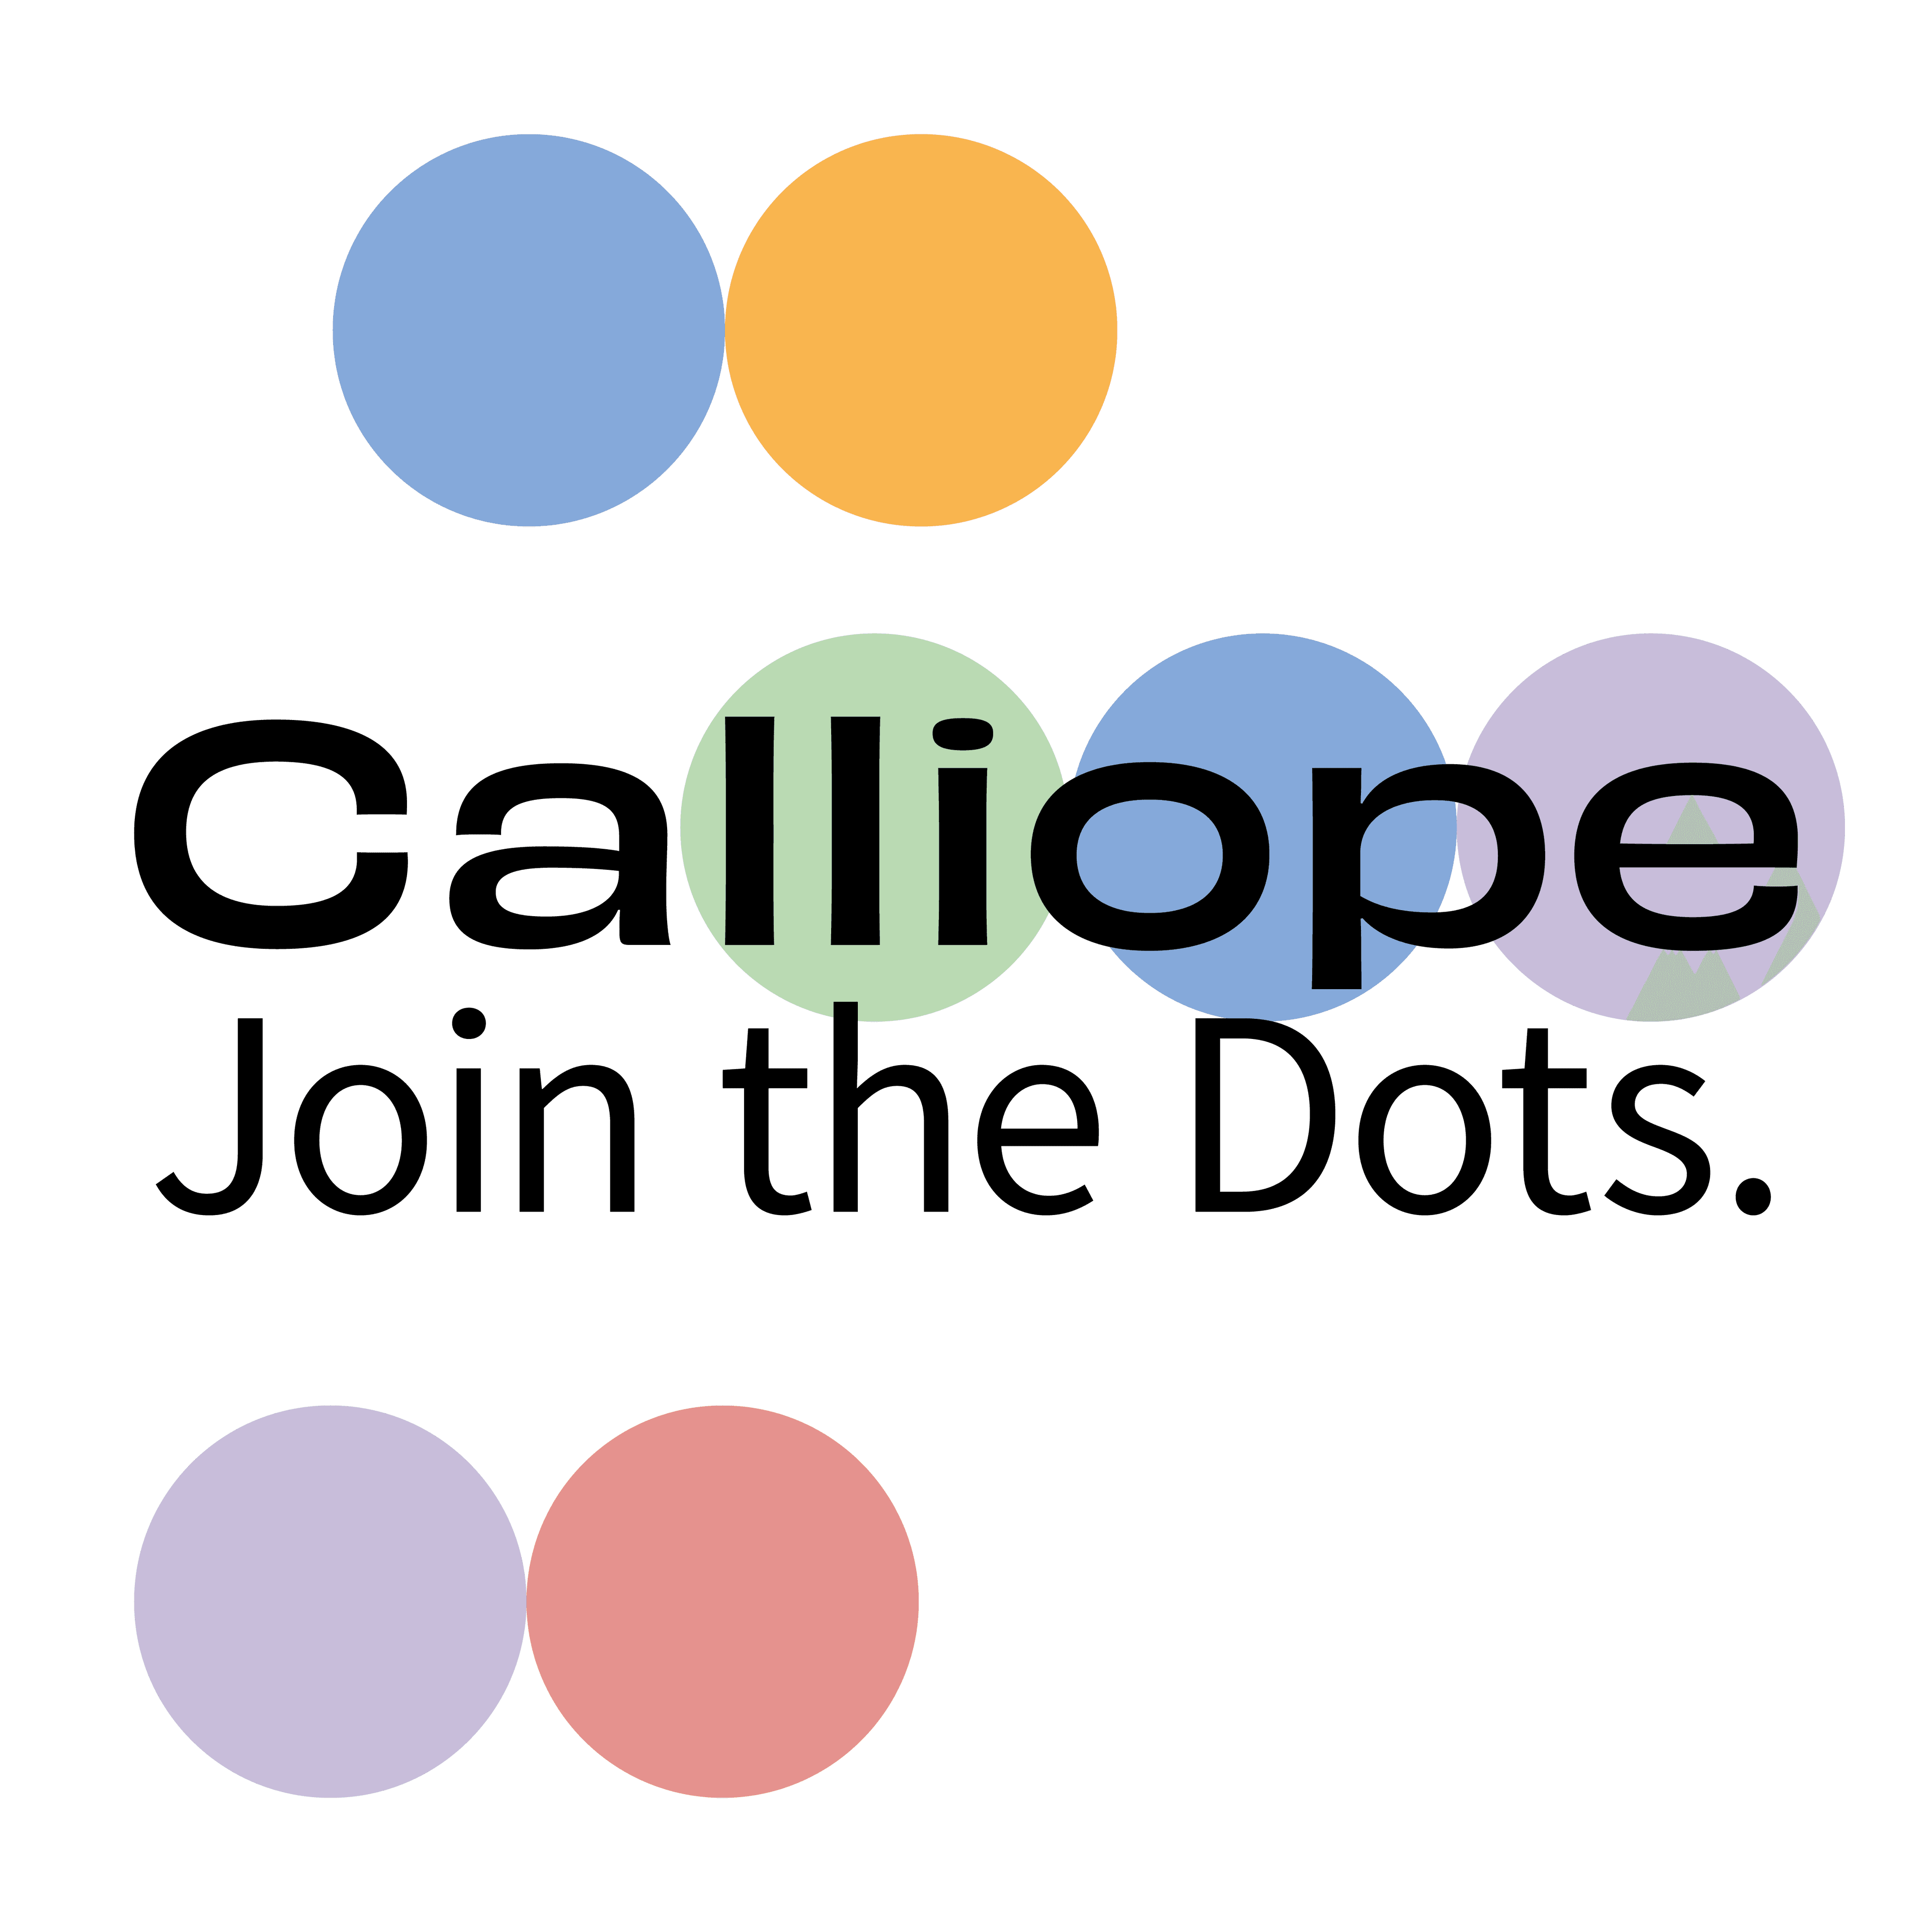 Calliope. Join the dots, Изображение: Федеральное министерство европейских и международных дел Австрии/ BMEIA